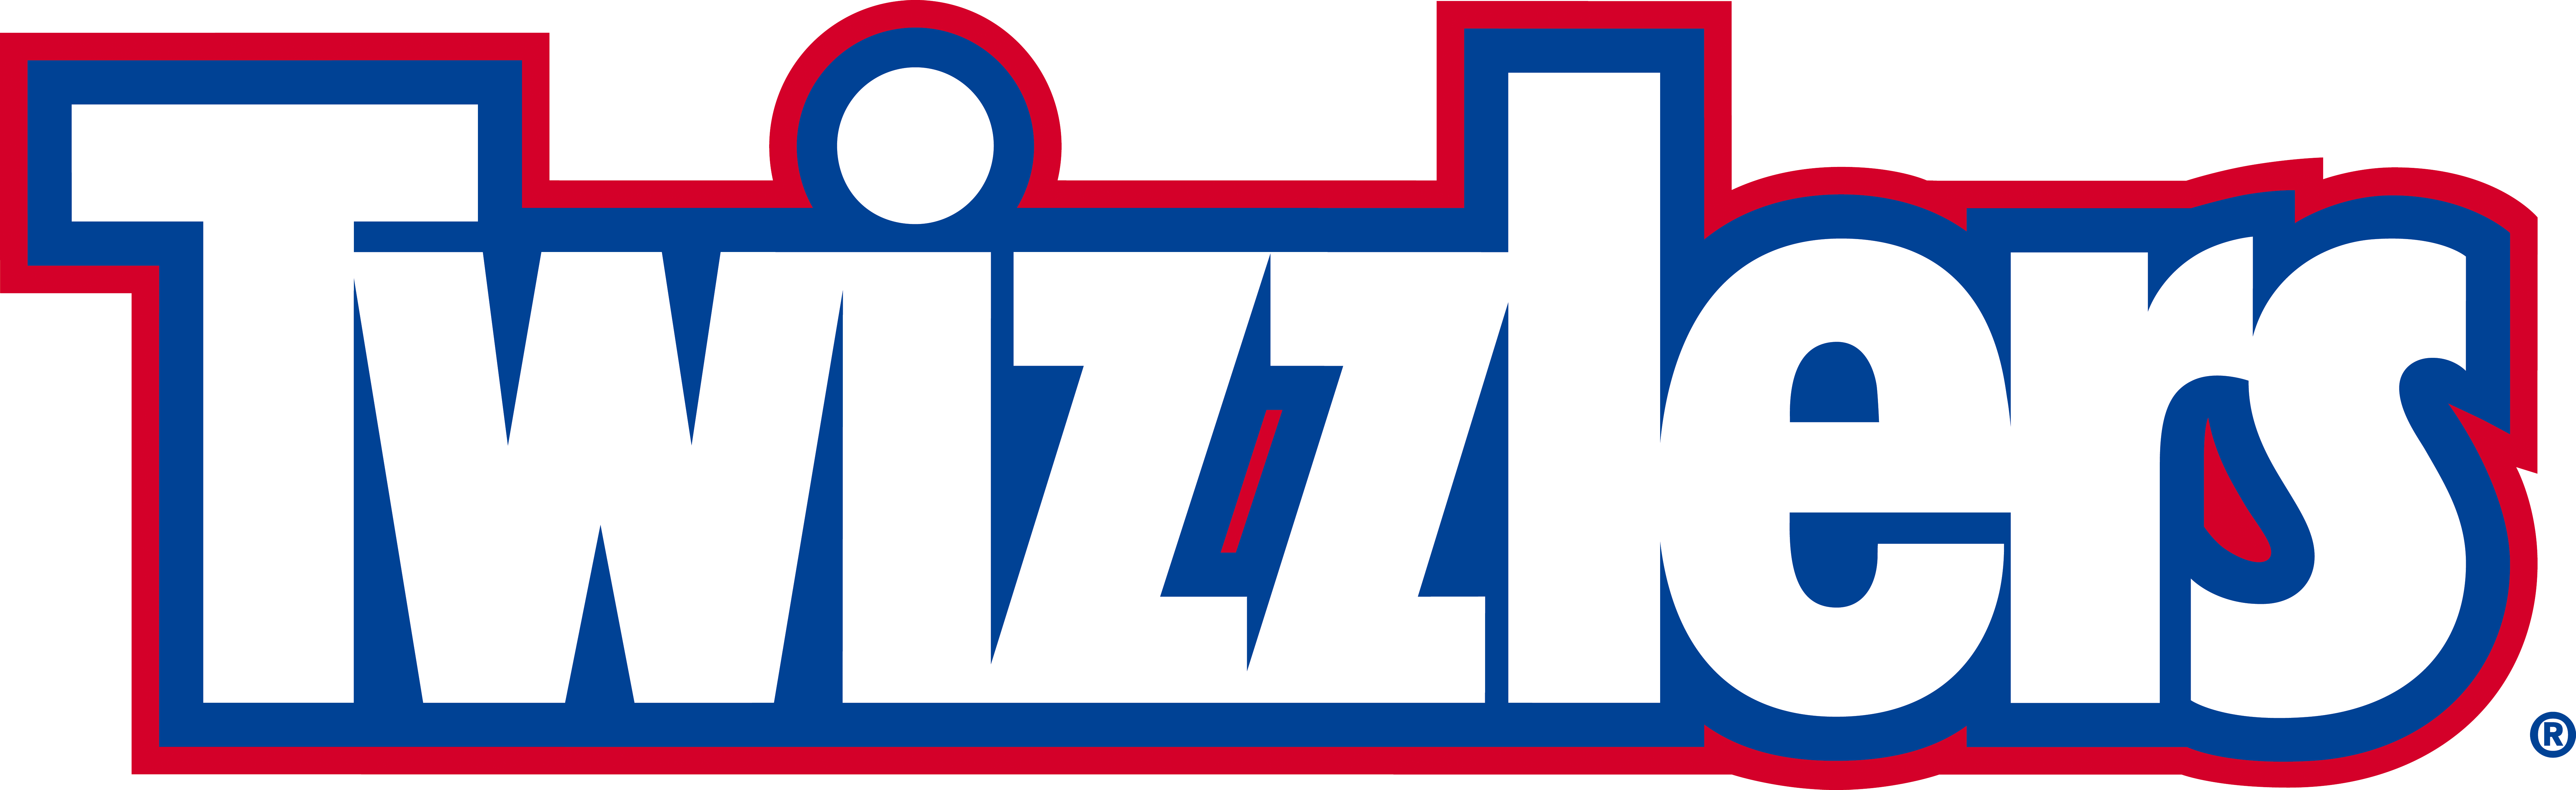 Twizzlers Logo - Twizzlers Logos